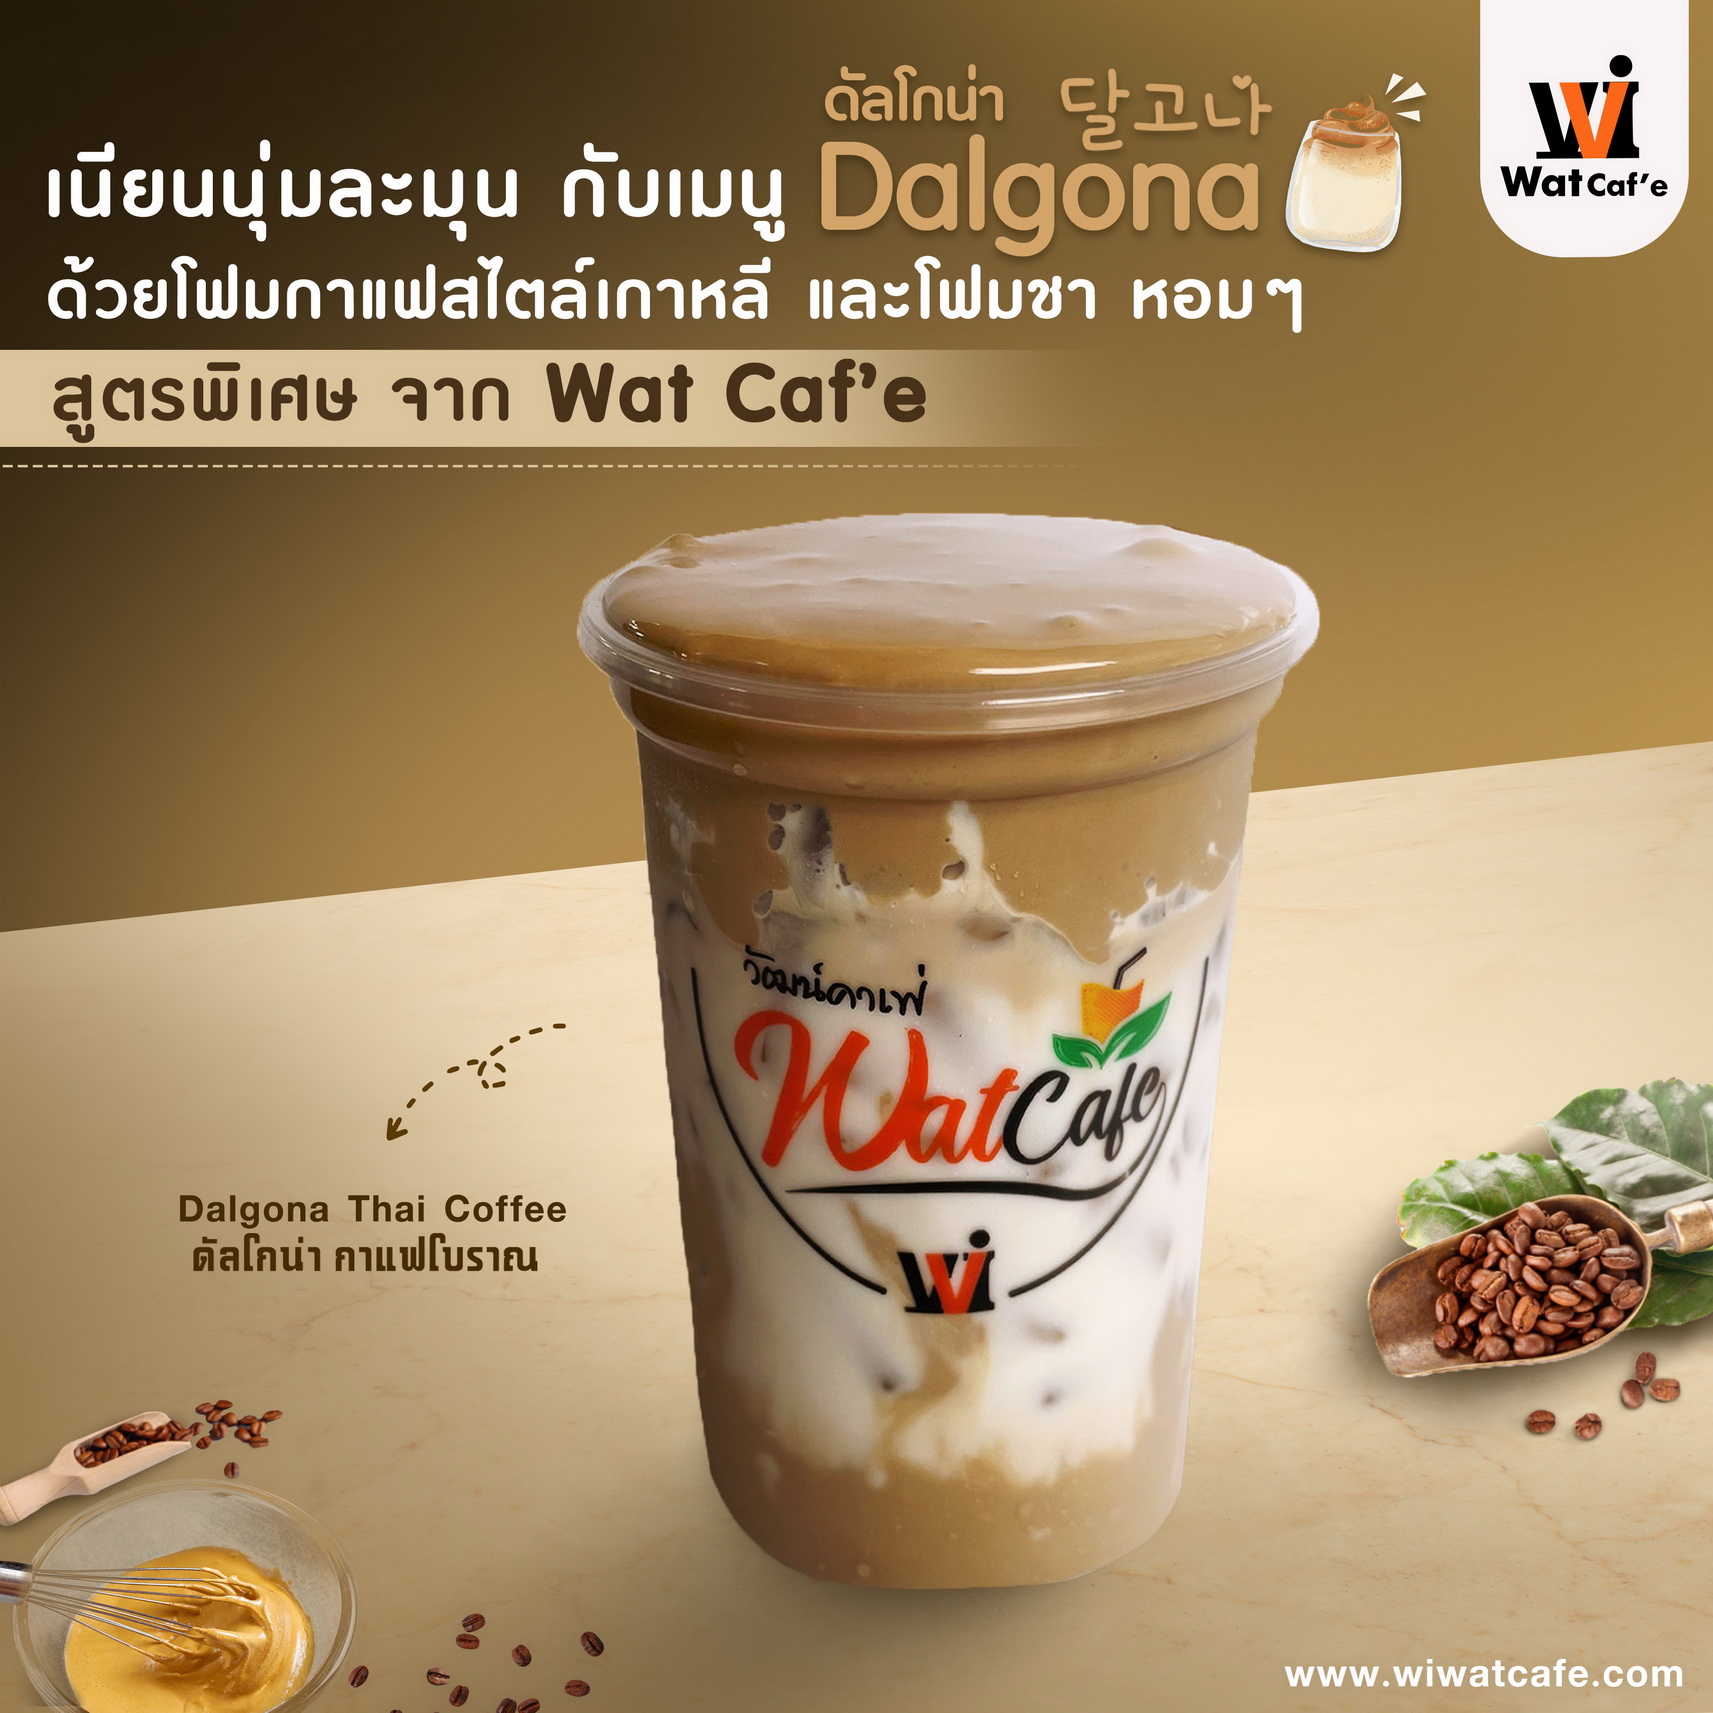 Dalagna Thai Coffee